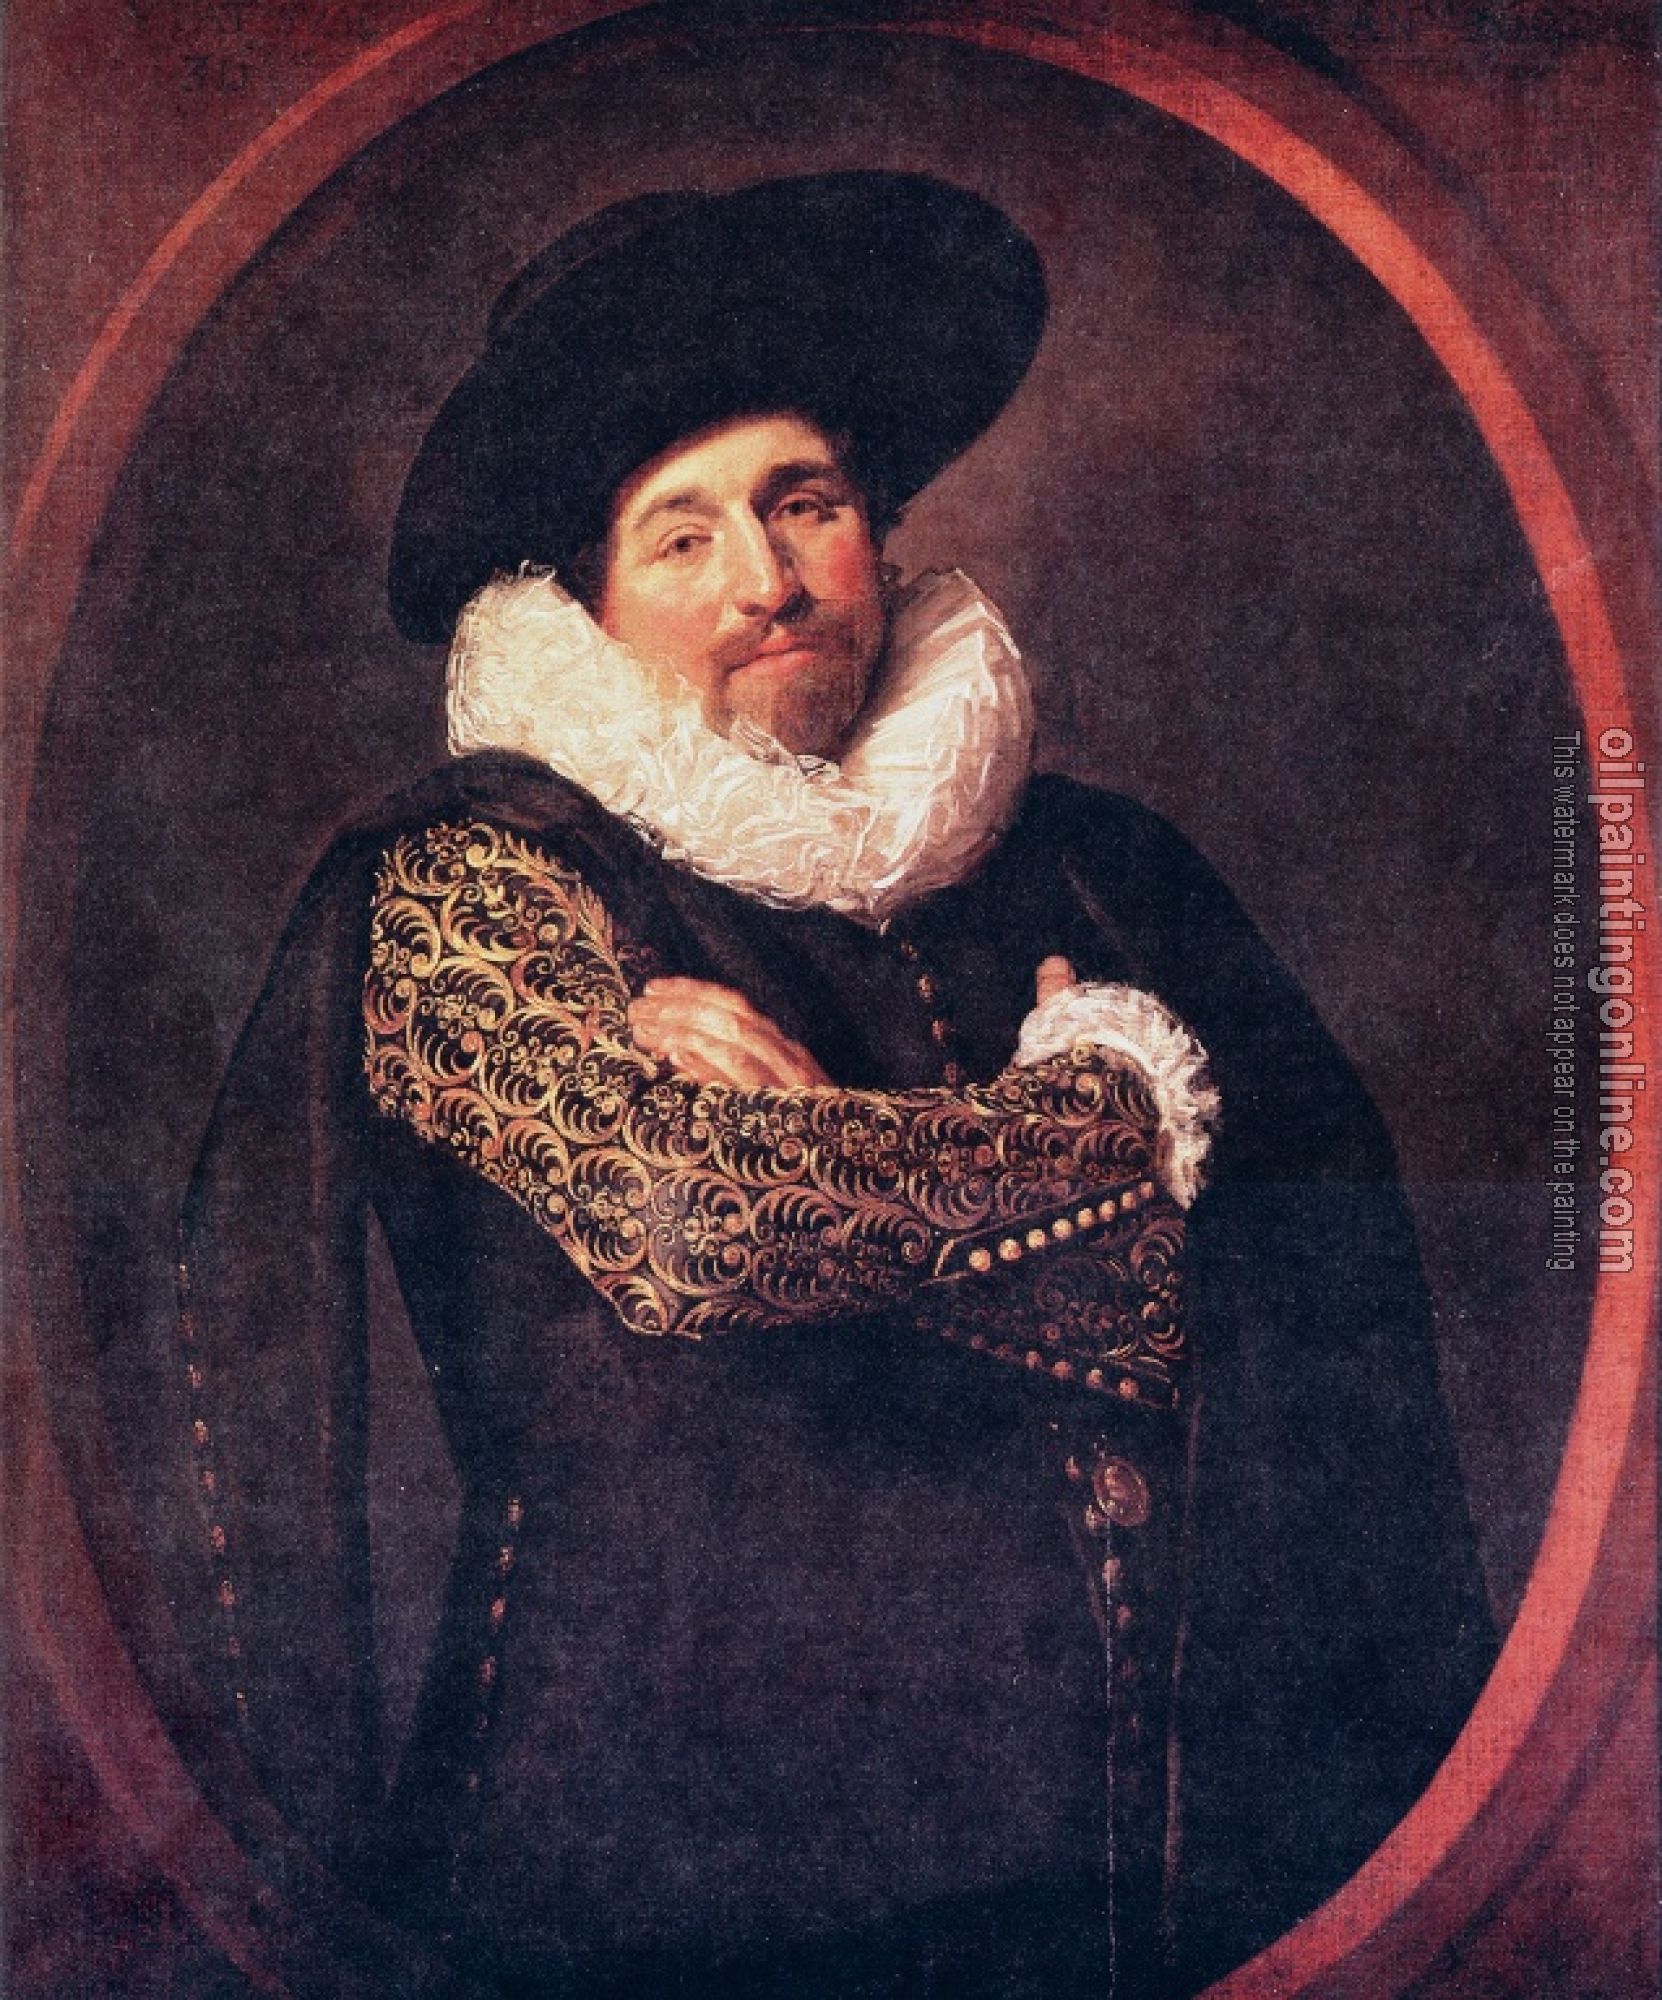 Hals, Frans - Portrait